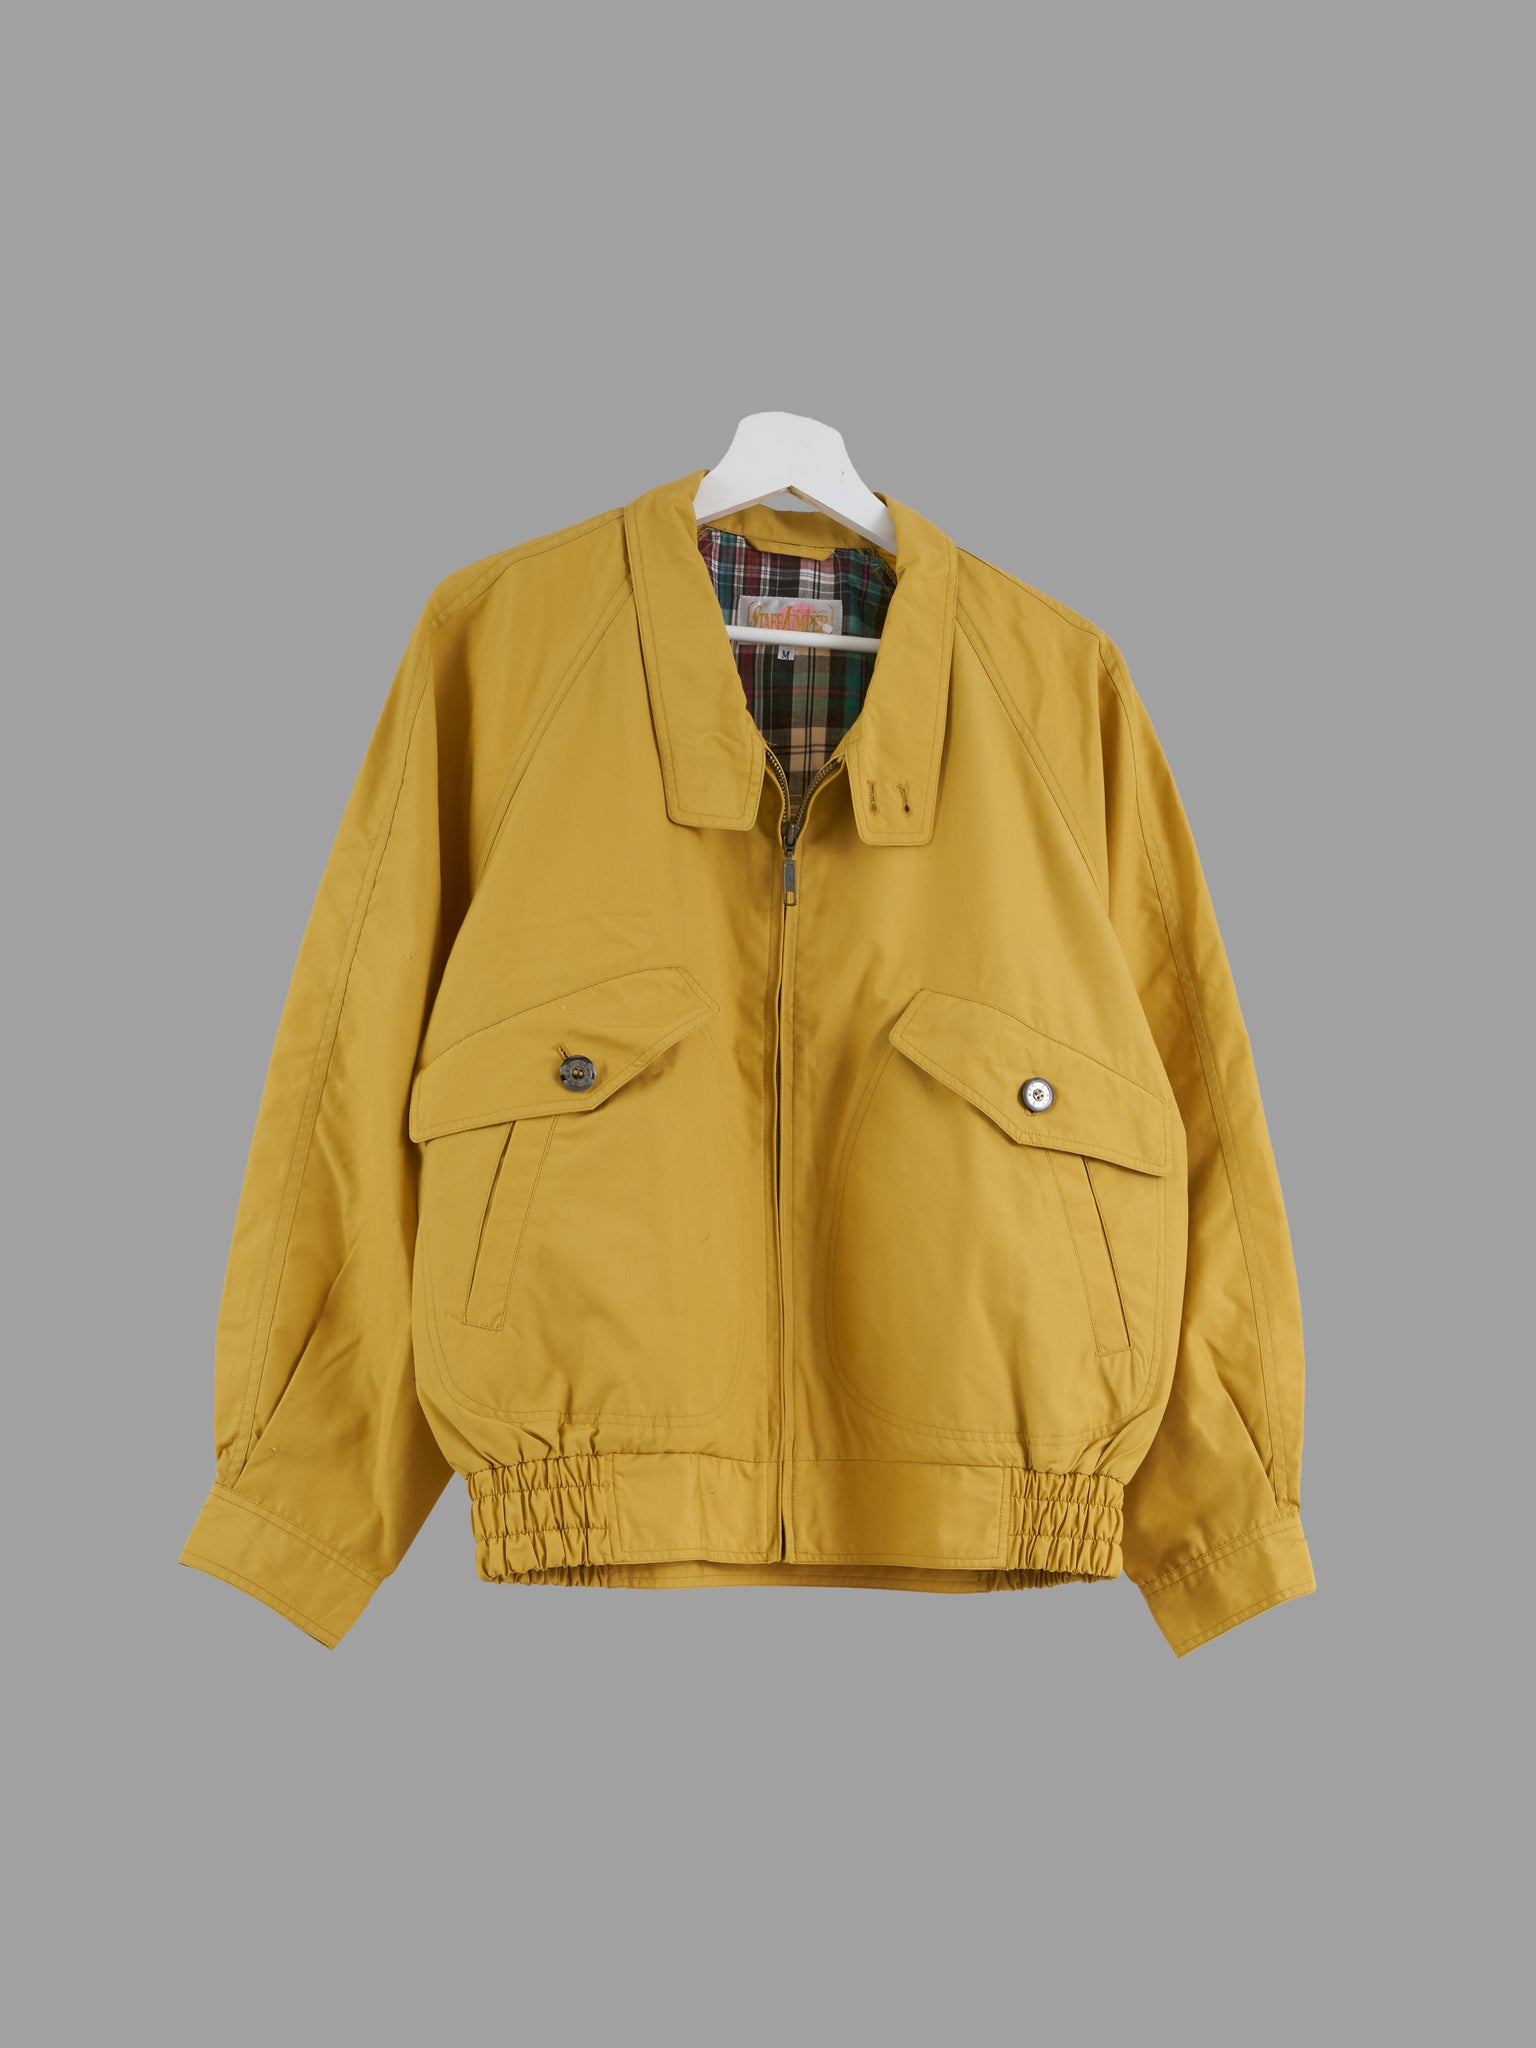 Vintage Staff Jumper mustard poly-cotton flap pocket bomber jacket - size M